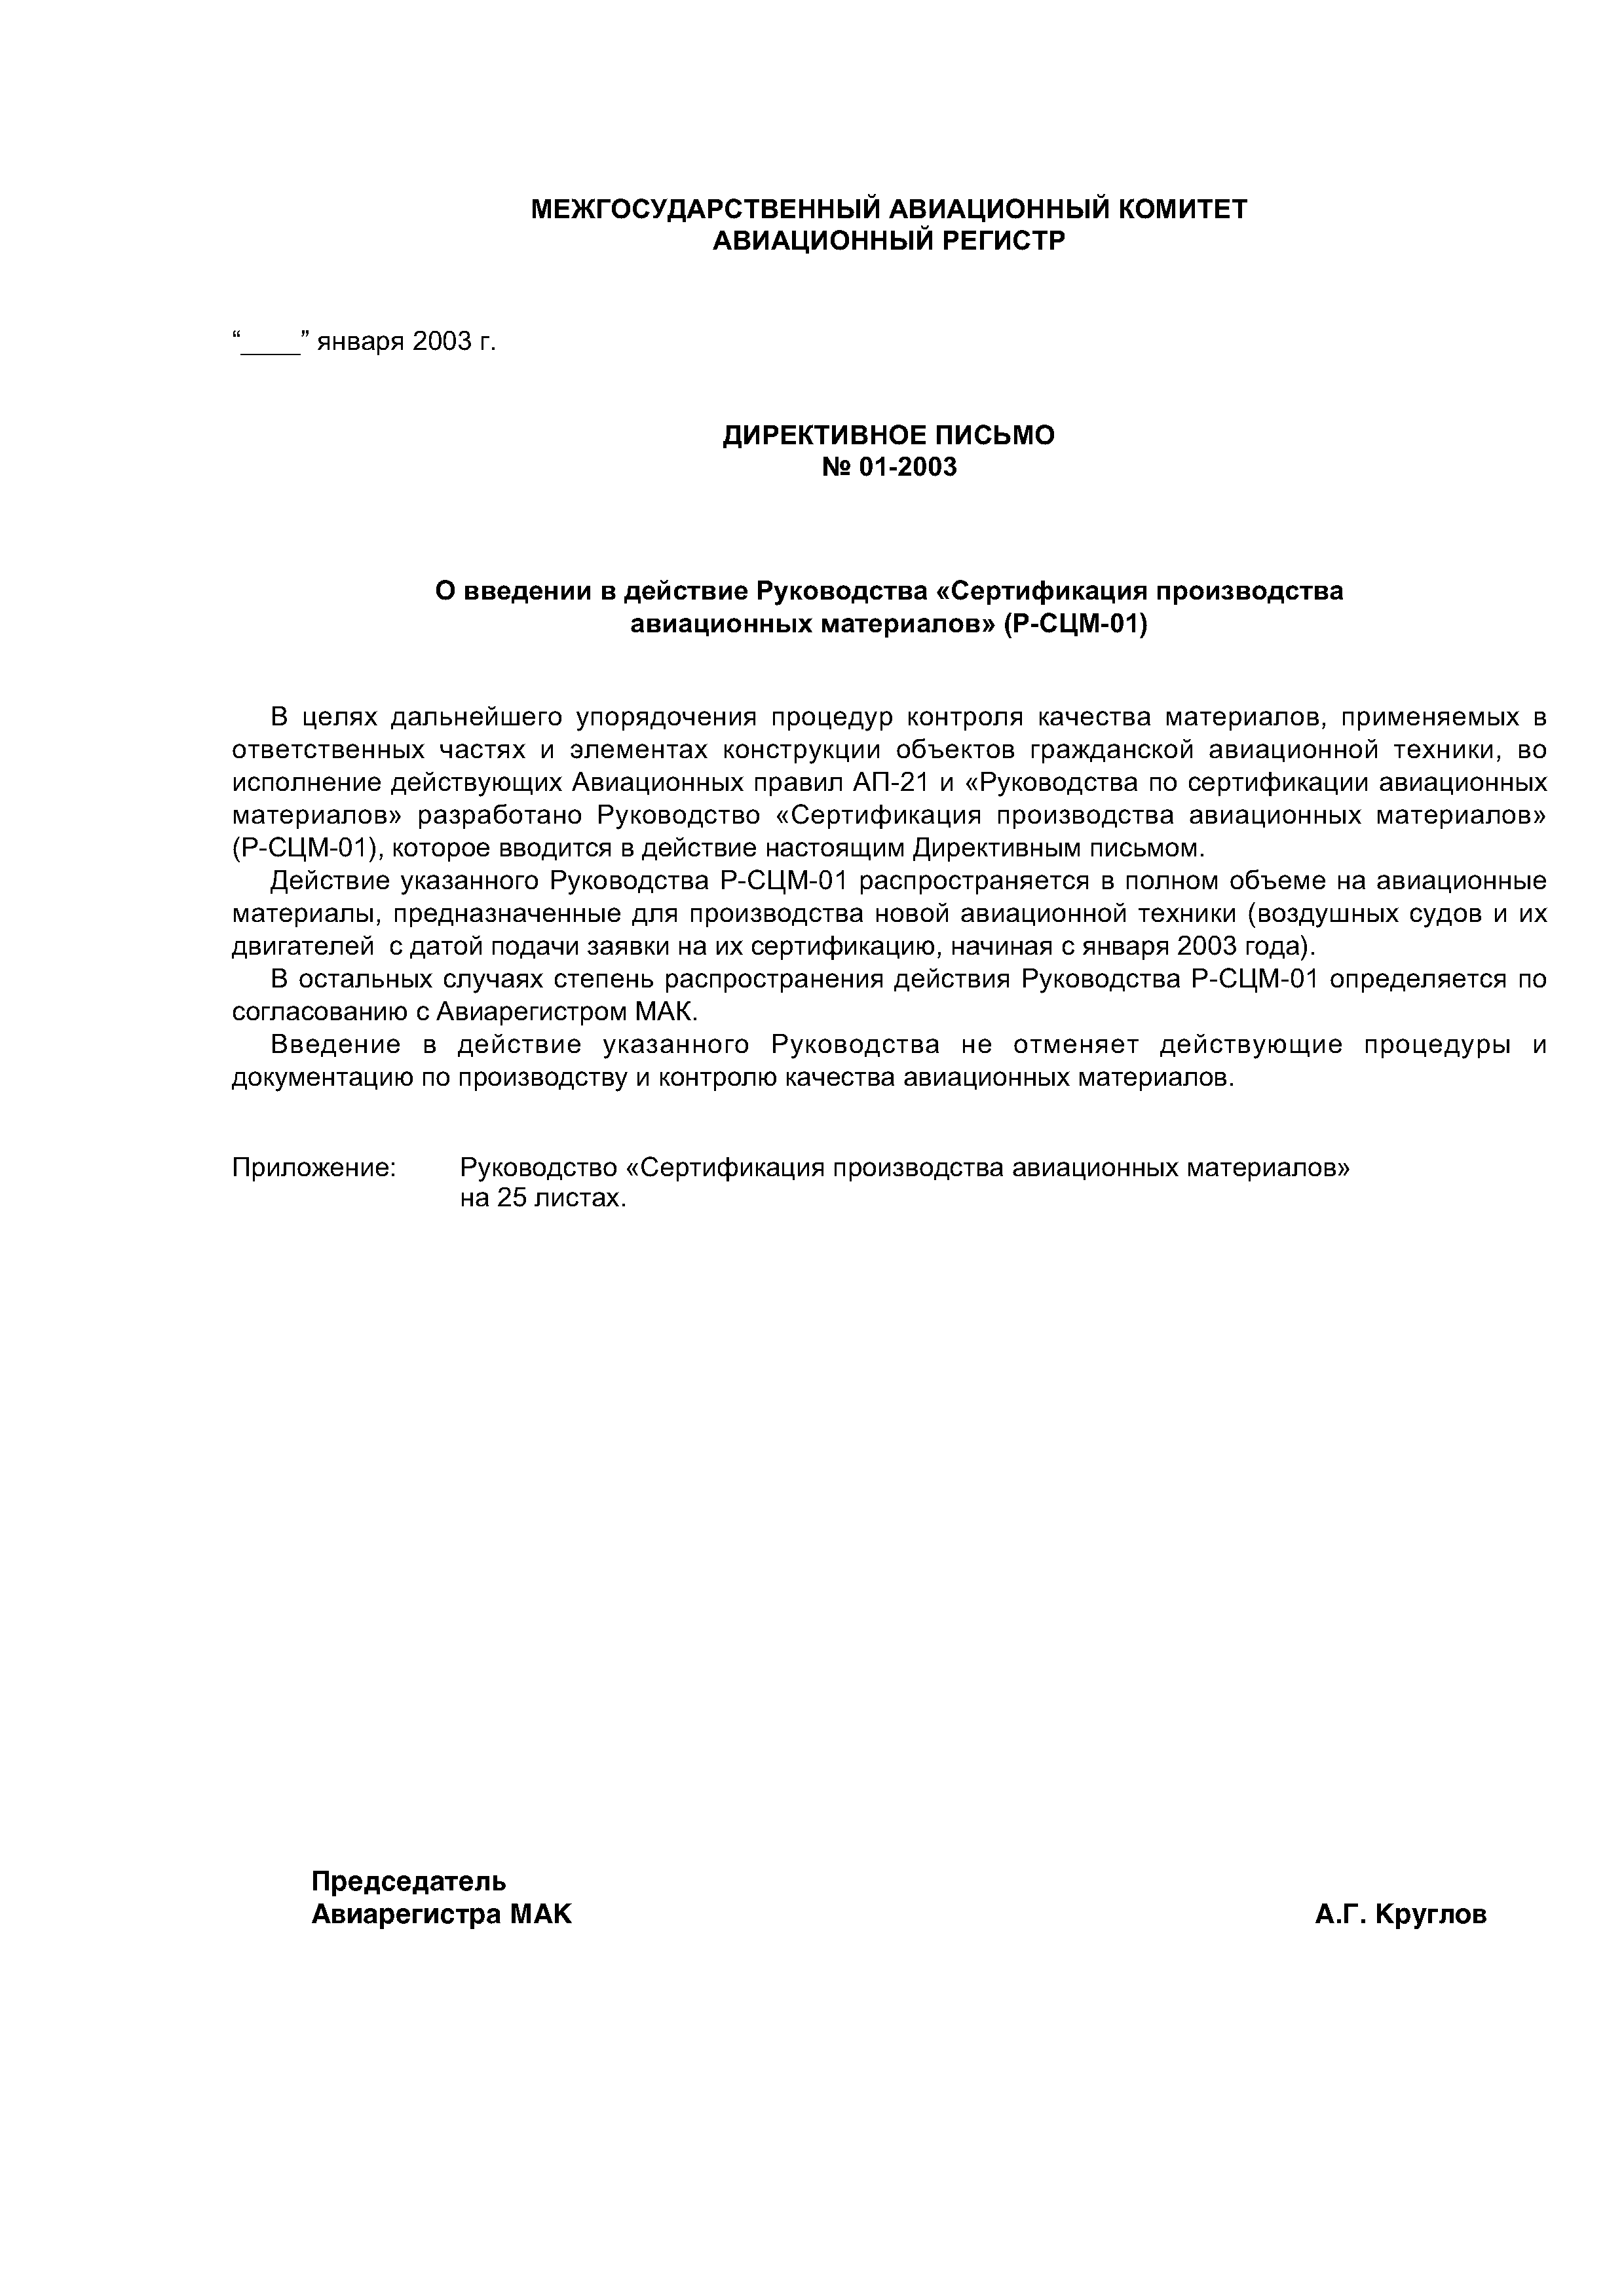 Директивное письмо 01-2003